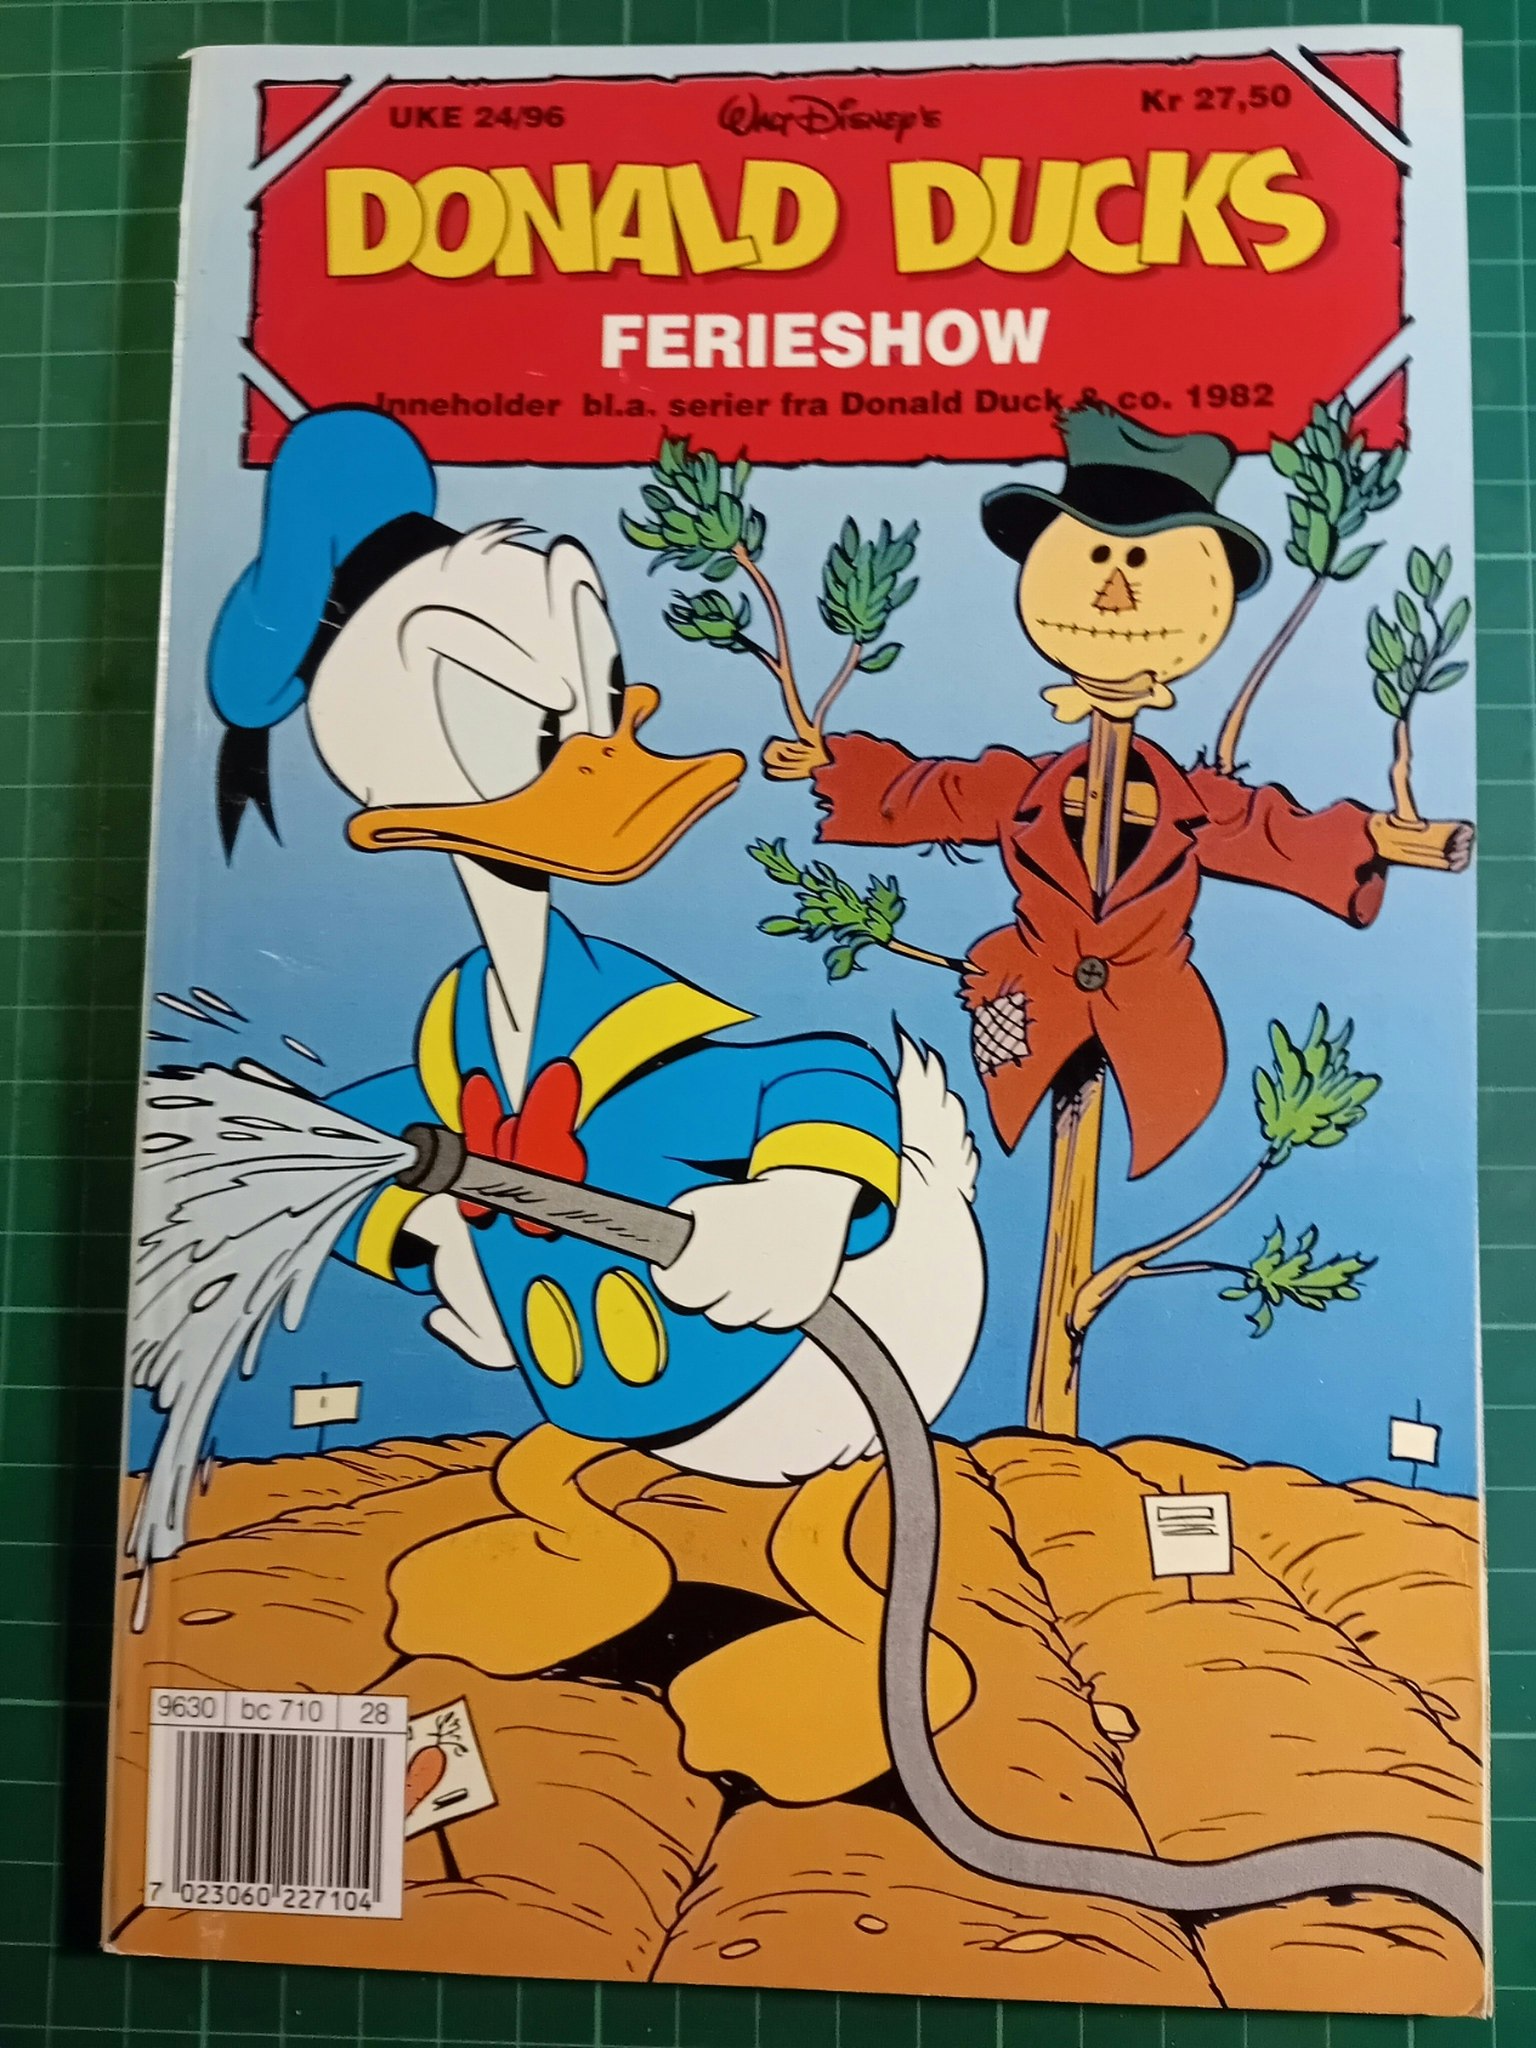 Donald Ducks 1996 Ferie show